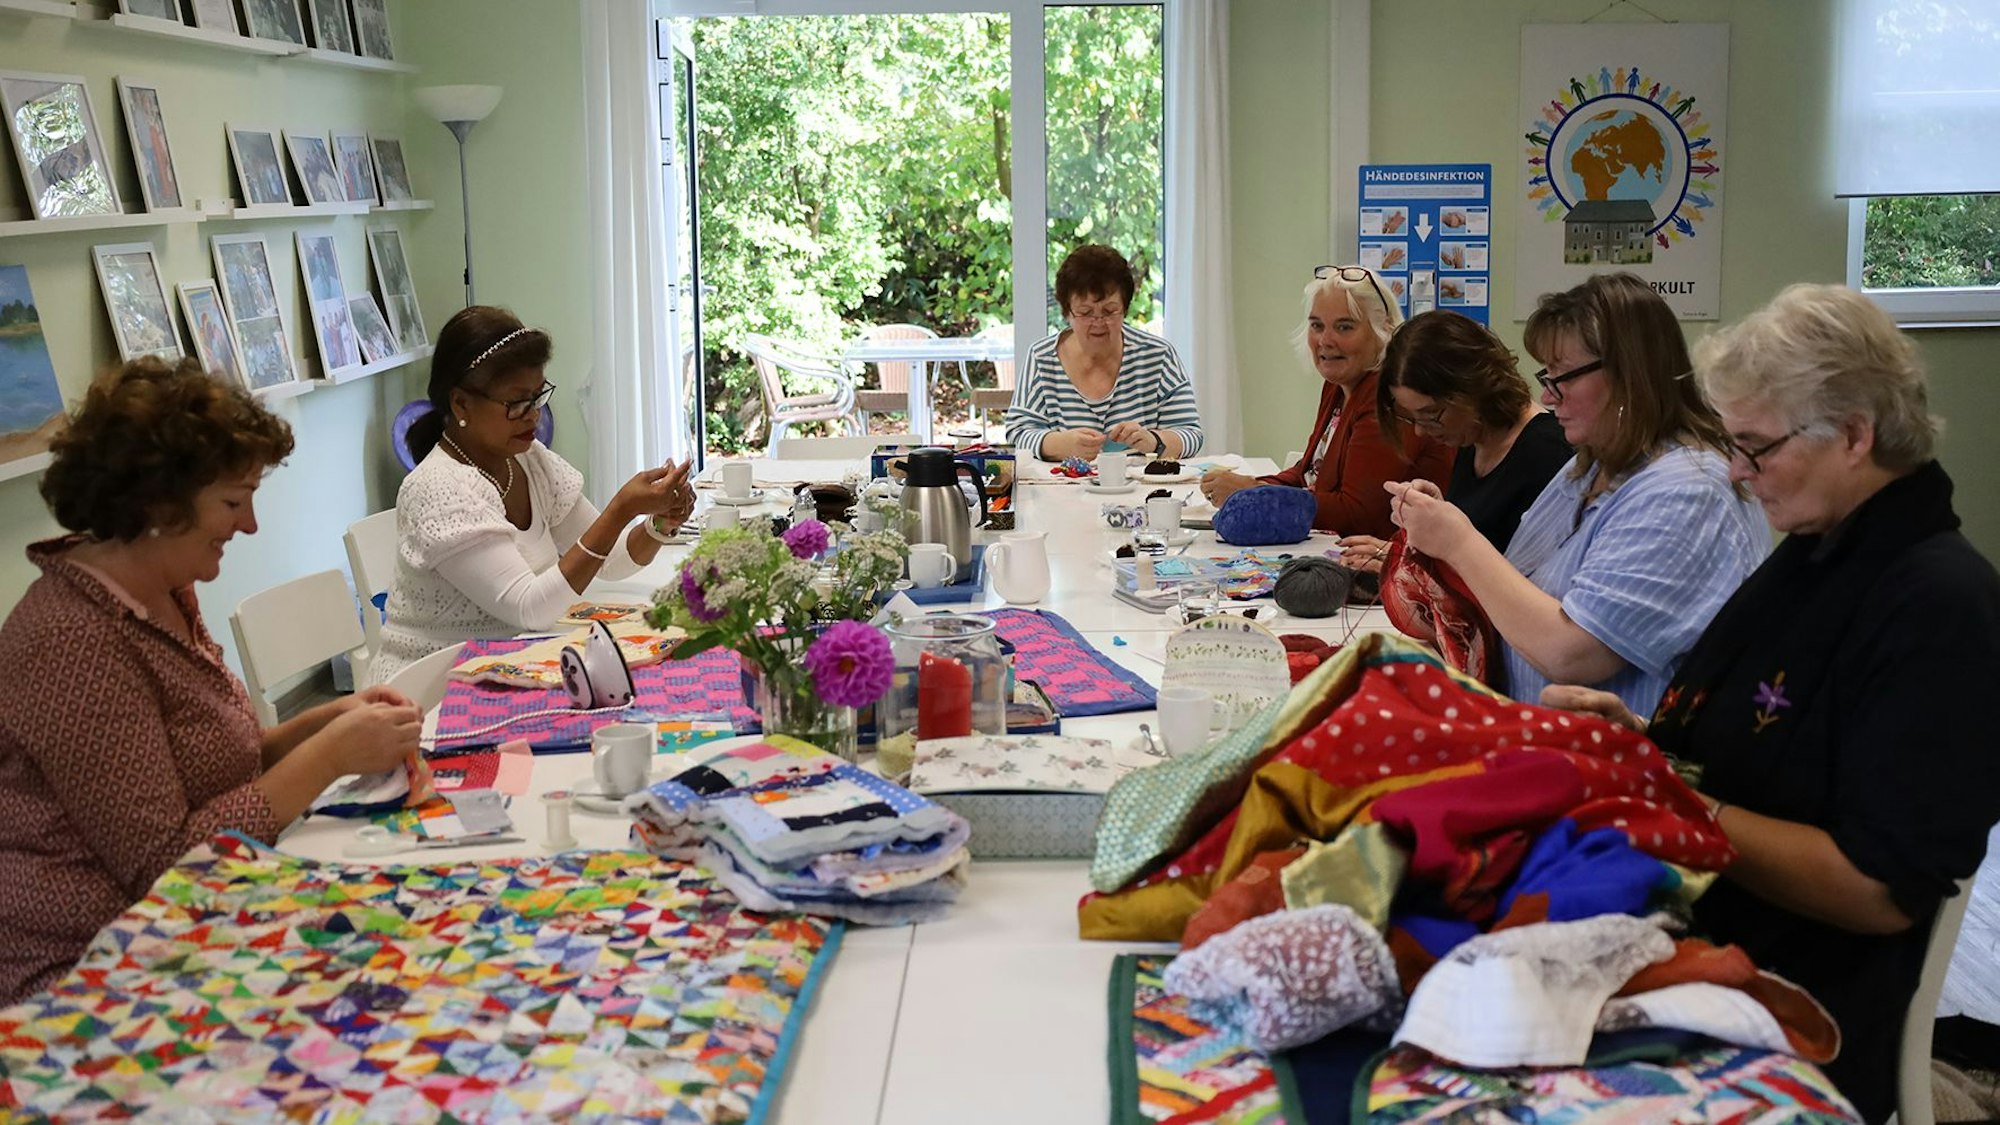 Sieben Frauen sitzen bei ihrer Handarbeit an einem großen Tisch, auf dem einige fertige Patchwork-Decken liegen.